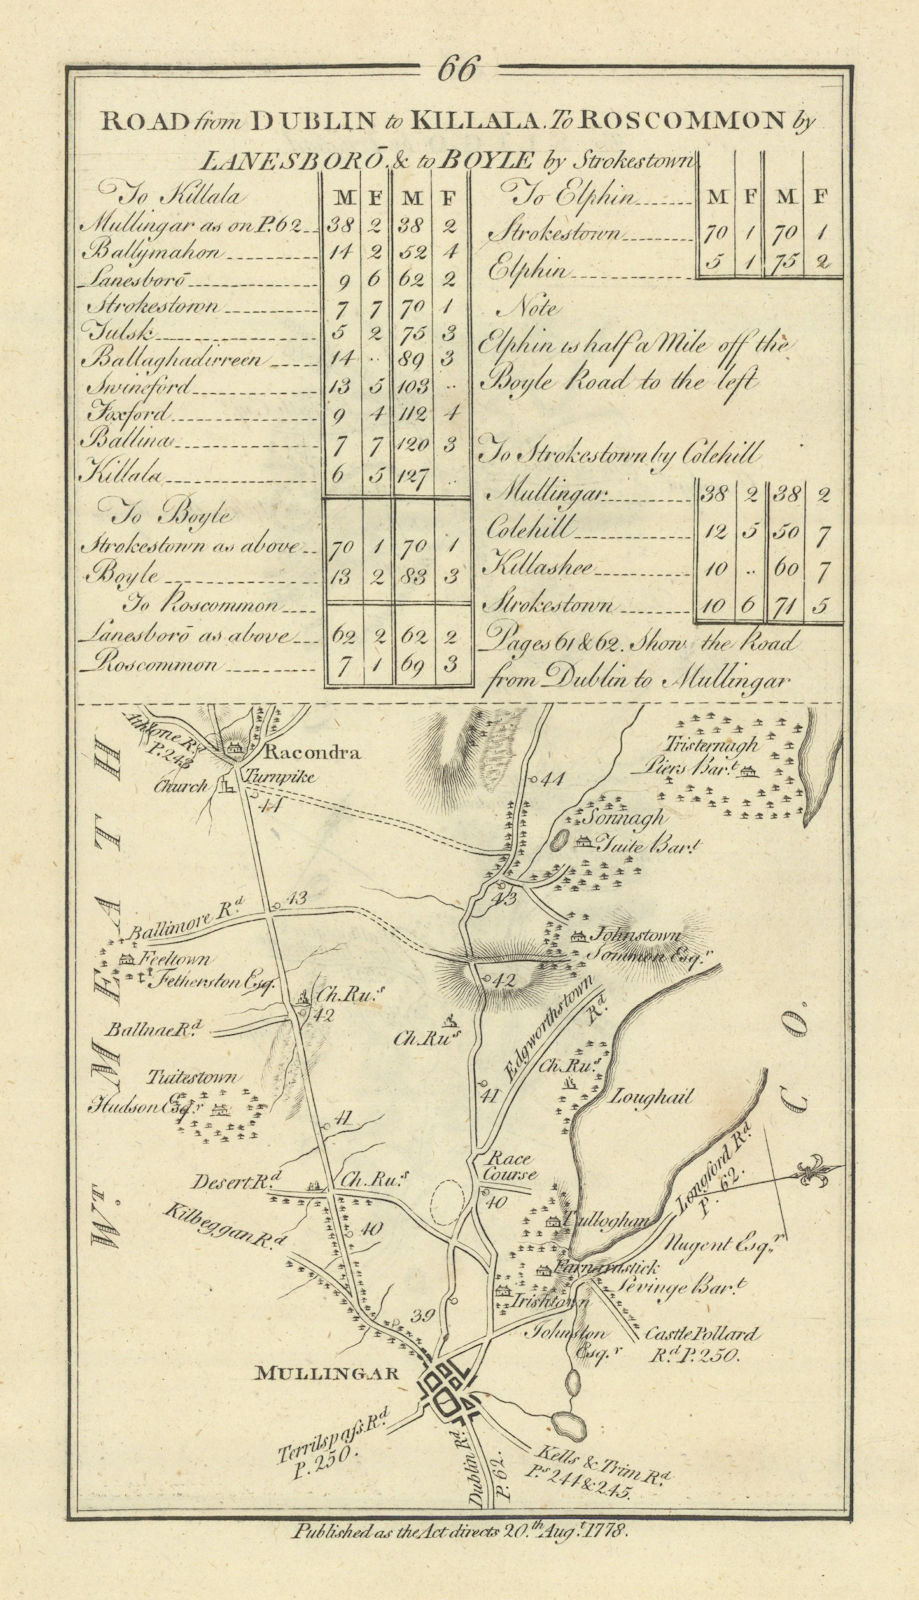 #66 Dublin to Killala. Mullingar Rathconrath Westmeath. TAYLOR/SKINNER 1778 map